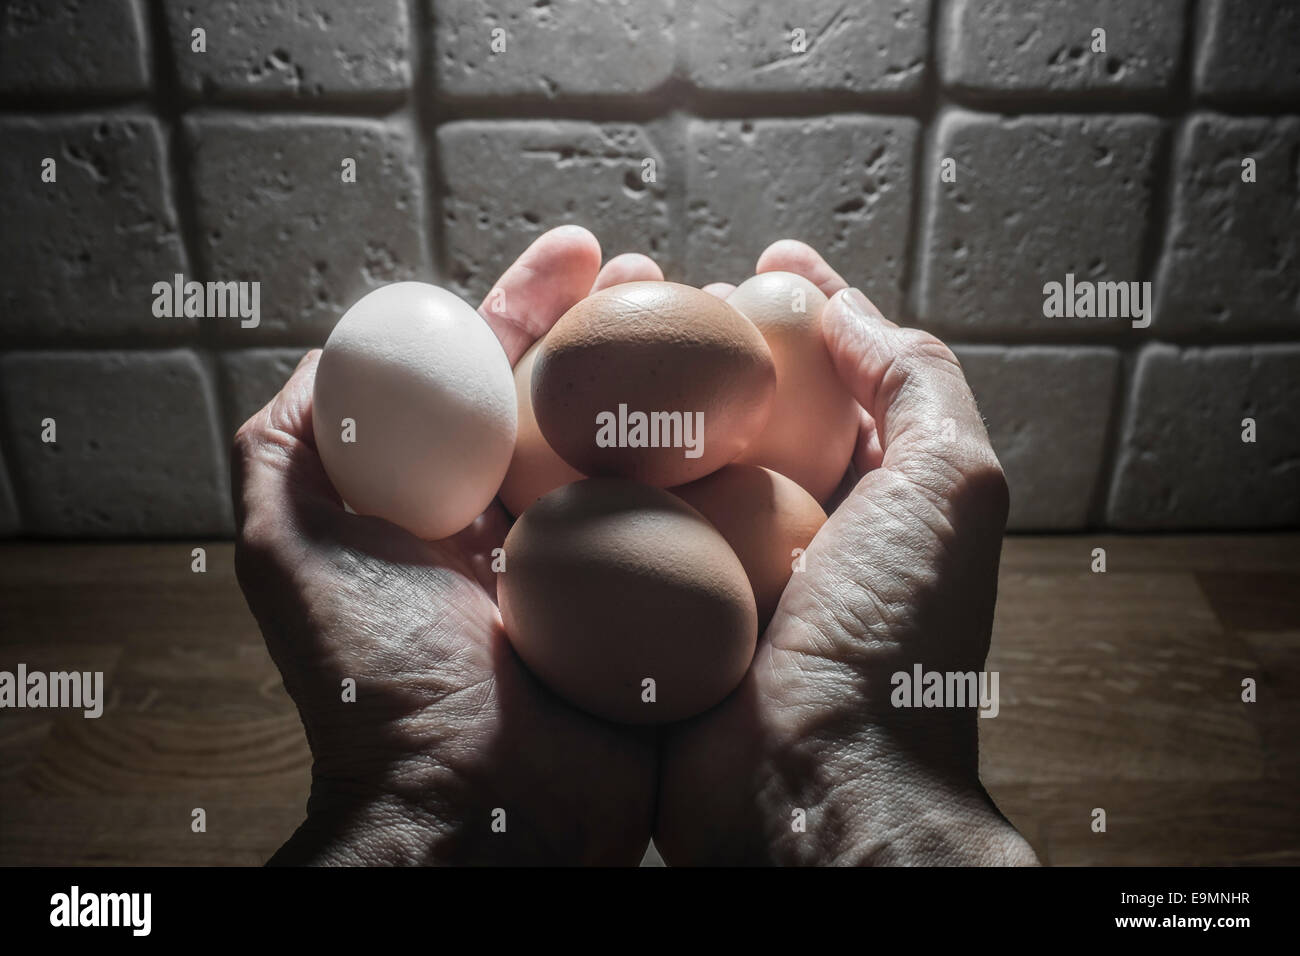 Manos sosteniendo ahuecados free range huevos de gallina. Foto de stock